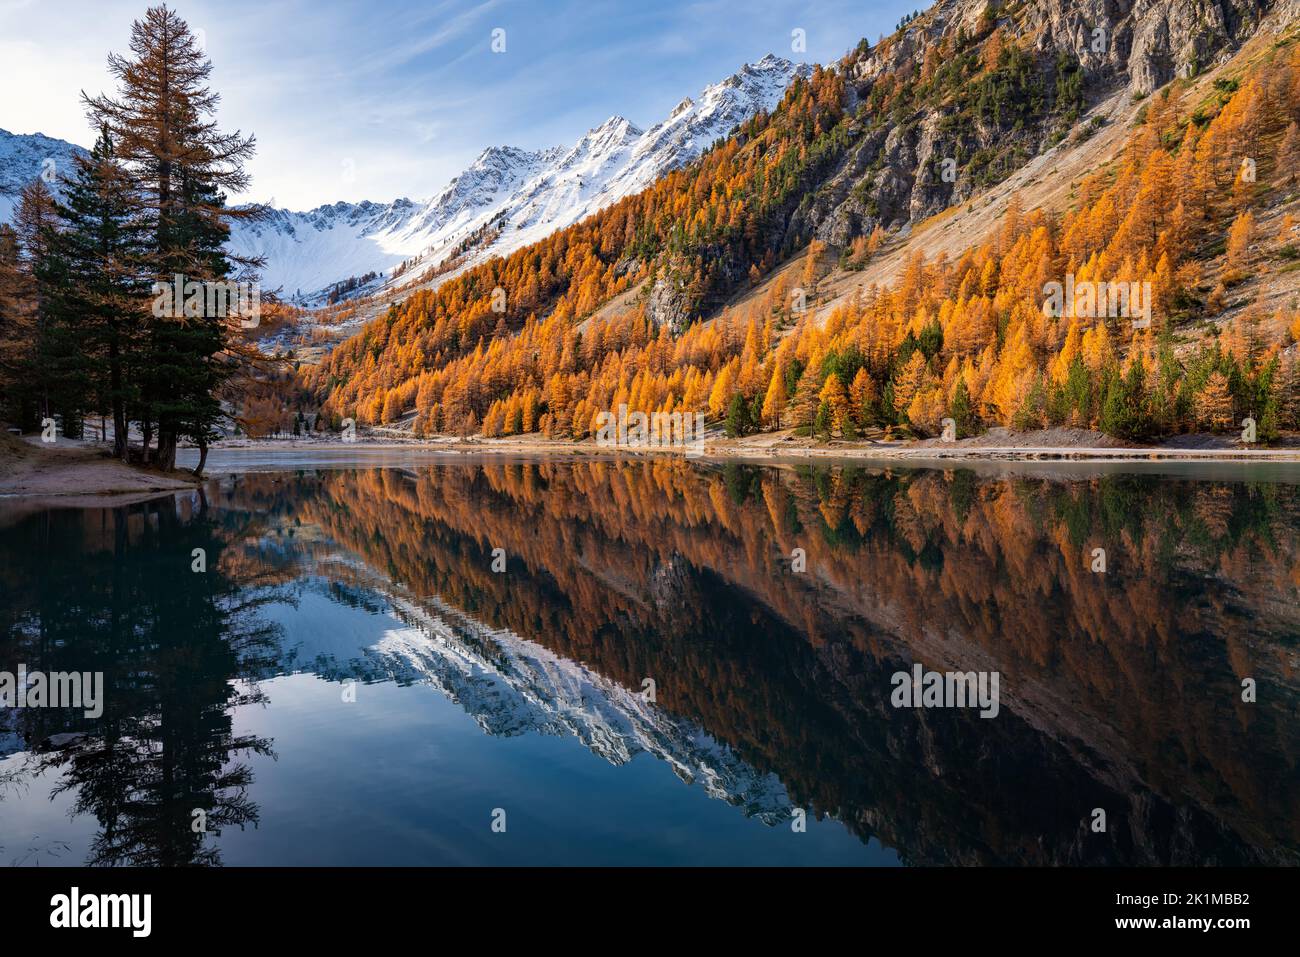 Alpes françaises. Lac Orceyrette en automne avec mélèze doré. Région de Briançon dans les Hautes-Alpes. France Banque D'Images